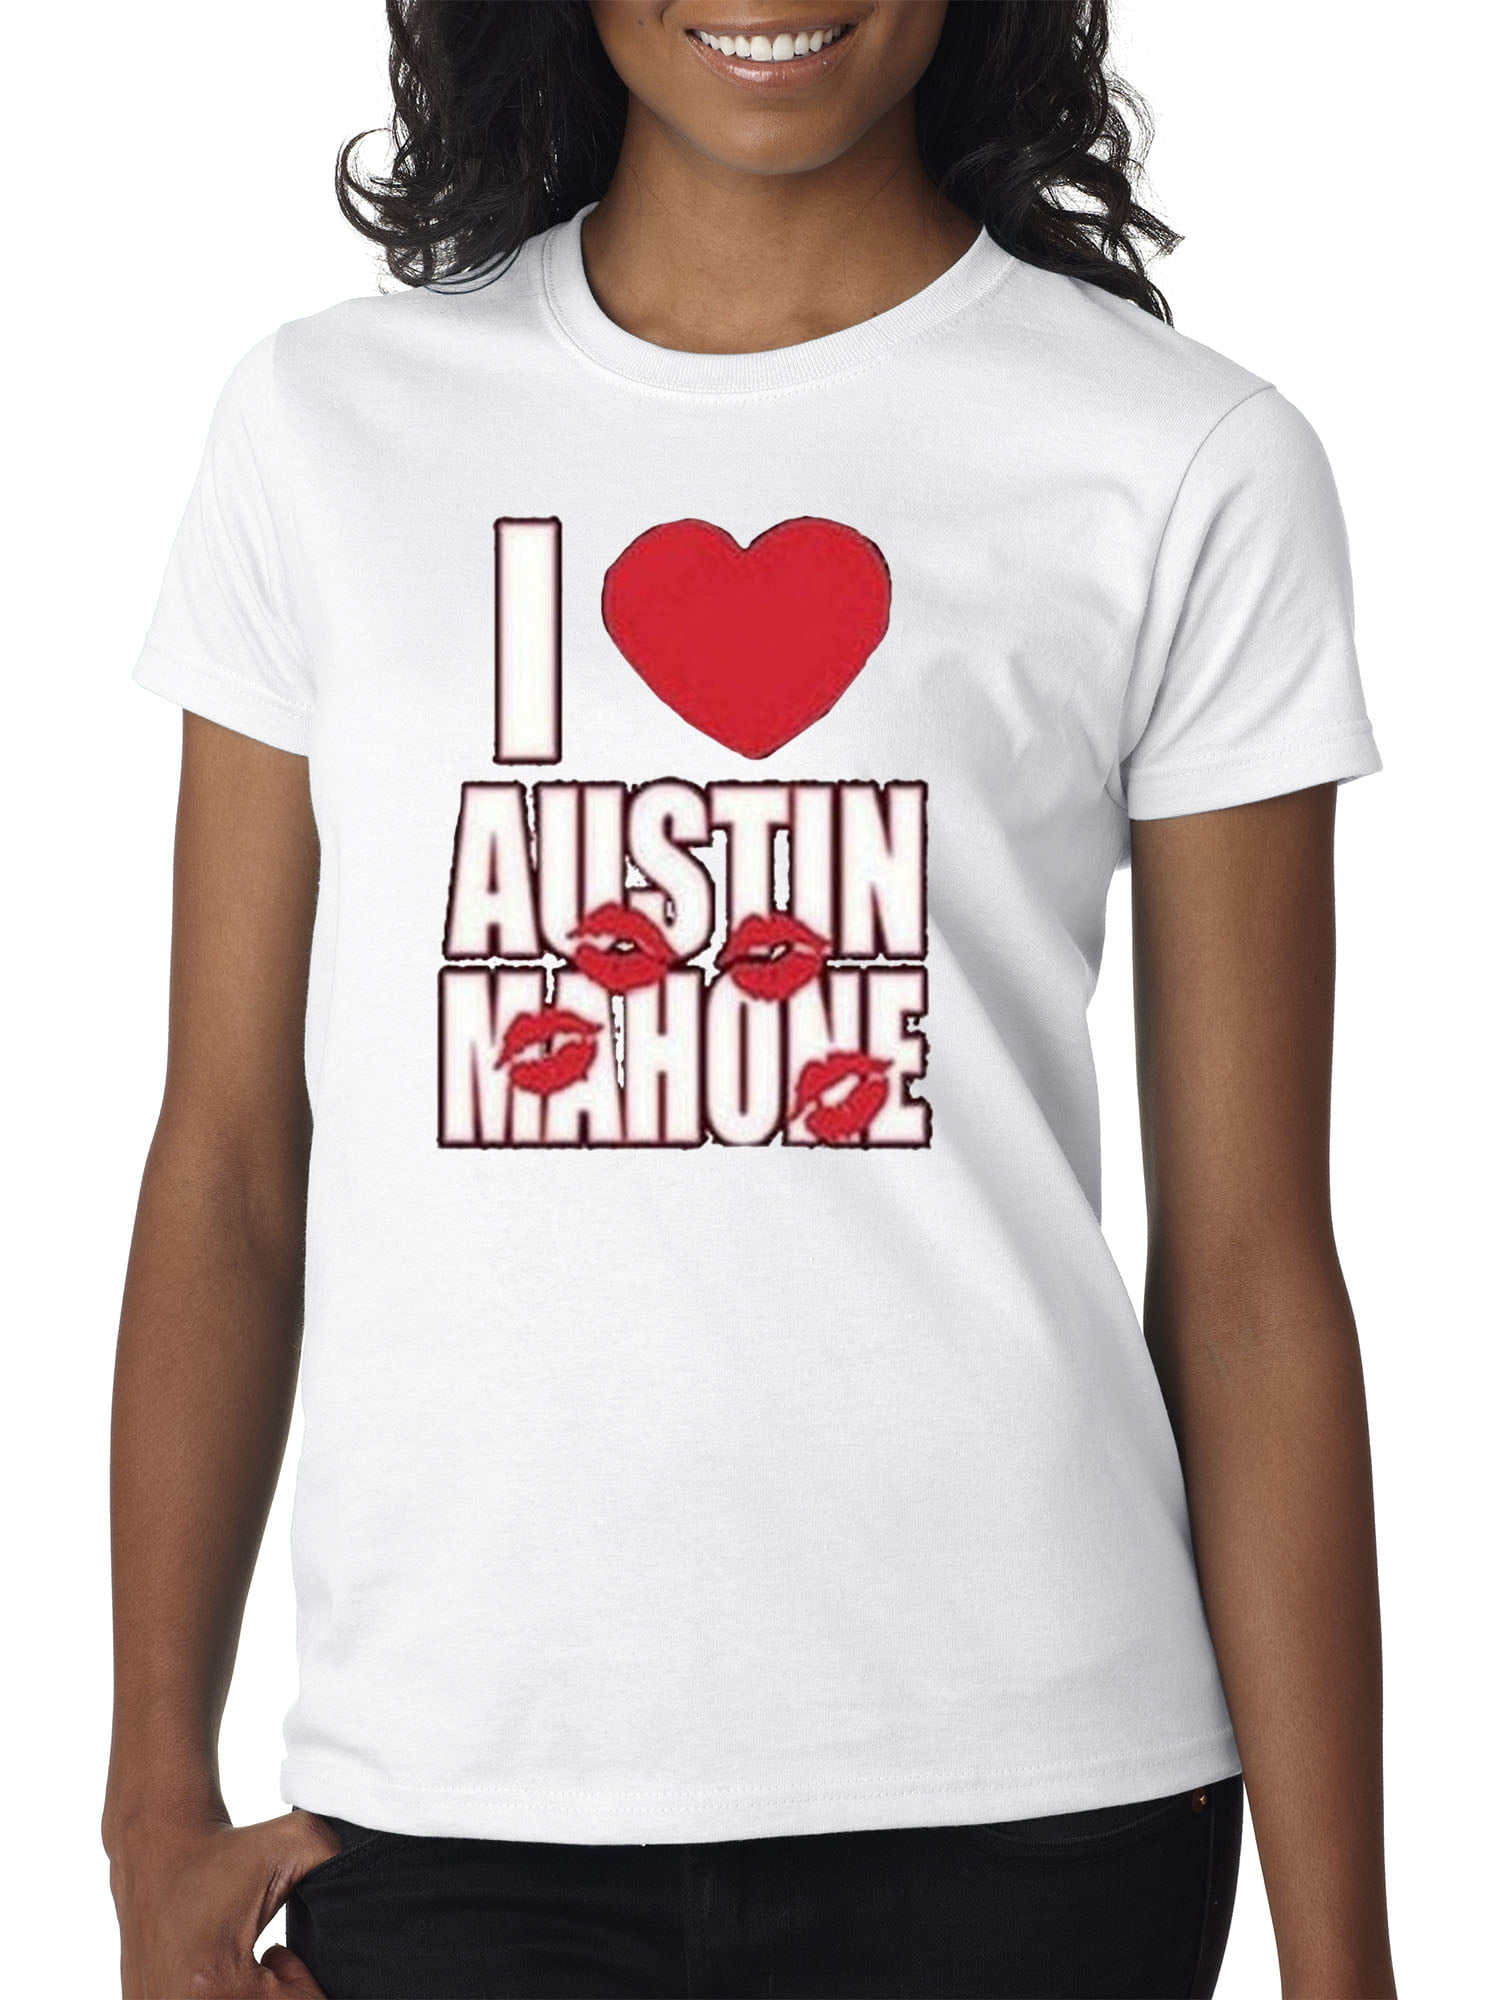 T shirt mahone austin Austin mahone